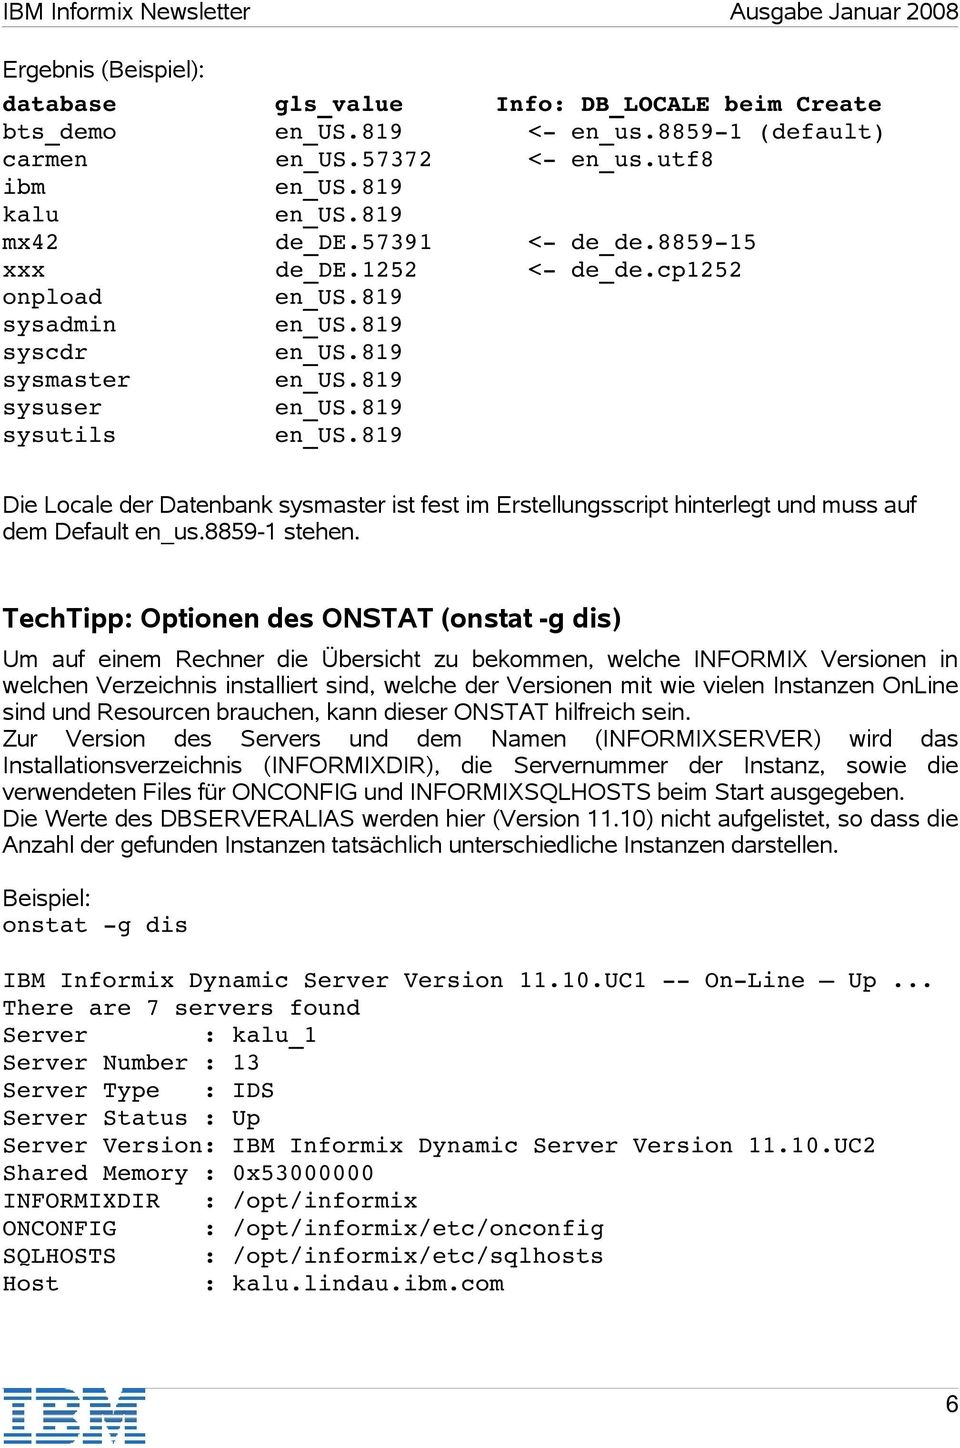 TechTipp: Optionen des ONSTAT (onstat -g dis) Um auf einem Rechner die Übersicht zu bekommen, welche INFORMIX Versionen in welchen Verzeichnis installiert sind, welche der Versionen mit wie vielen